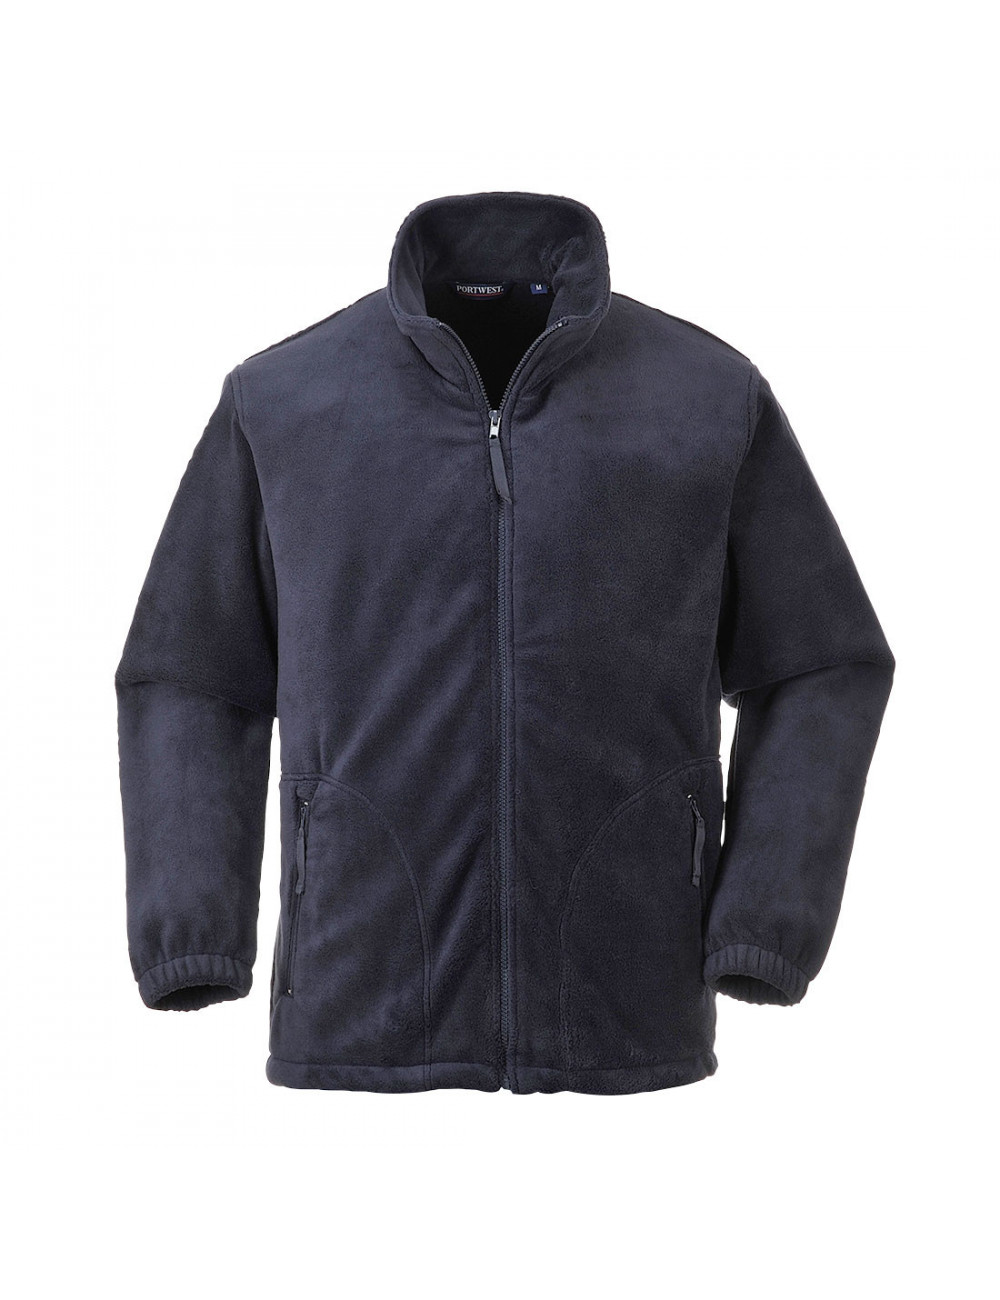 Argyll fleece jacket navy Portwest